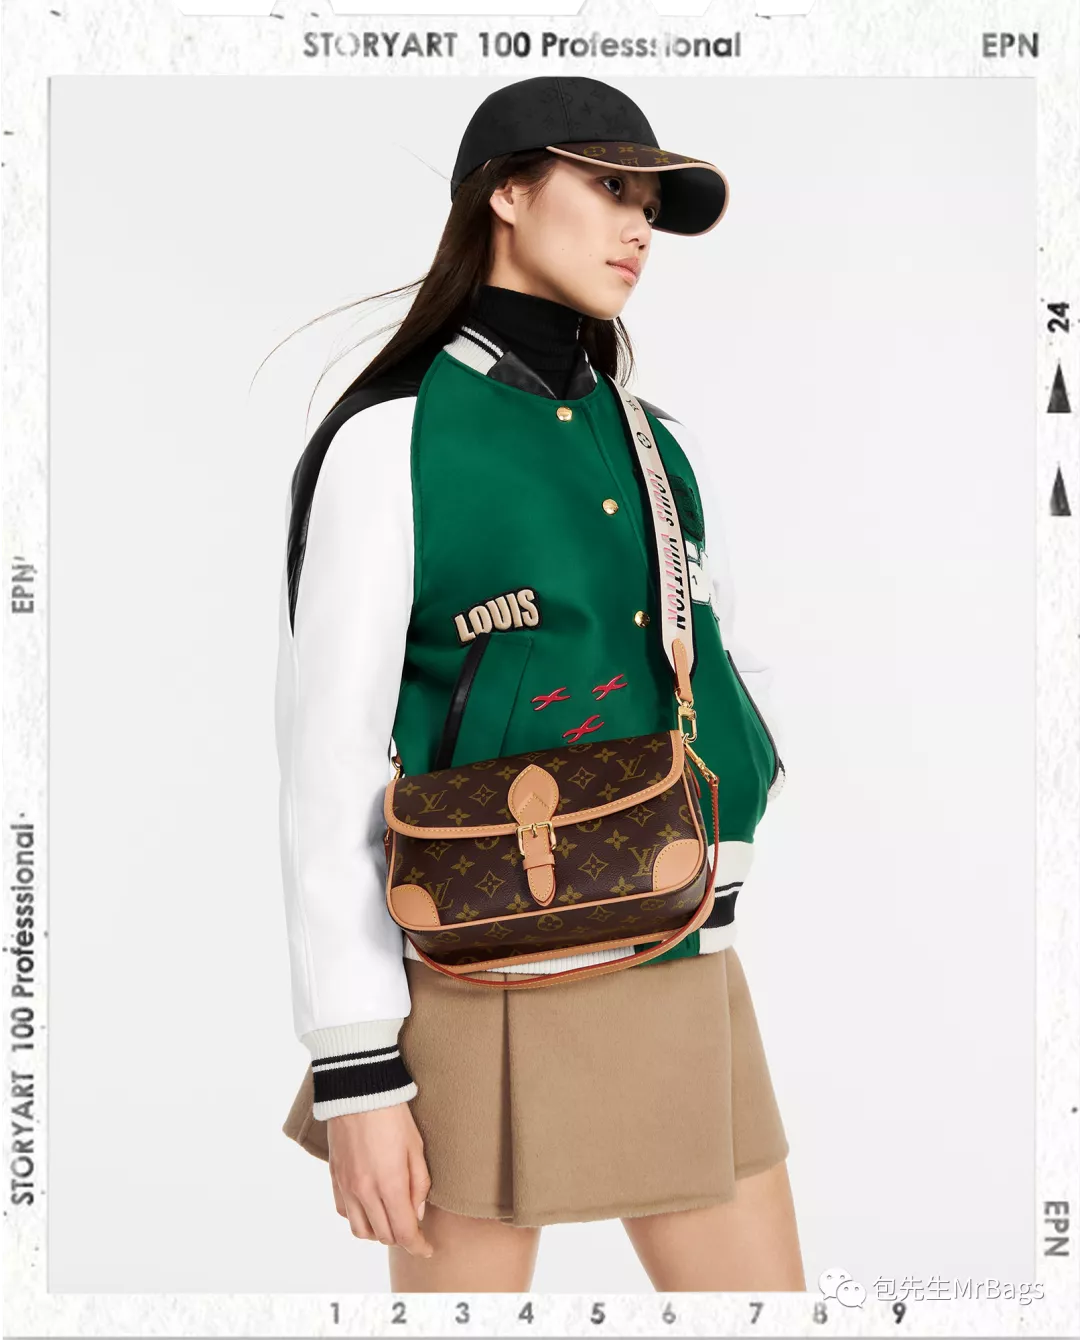 Top 12 mest værdige til at købe højkvalitets replika designertasker (2022 opdatering)-Bedste kvalitet falske Louis Vuitton taske online butik, Replica designer taske ru